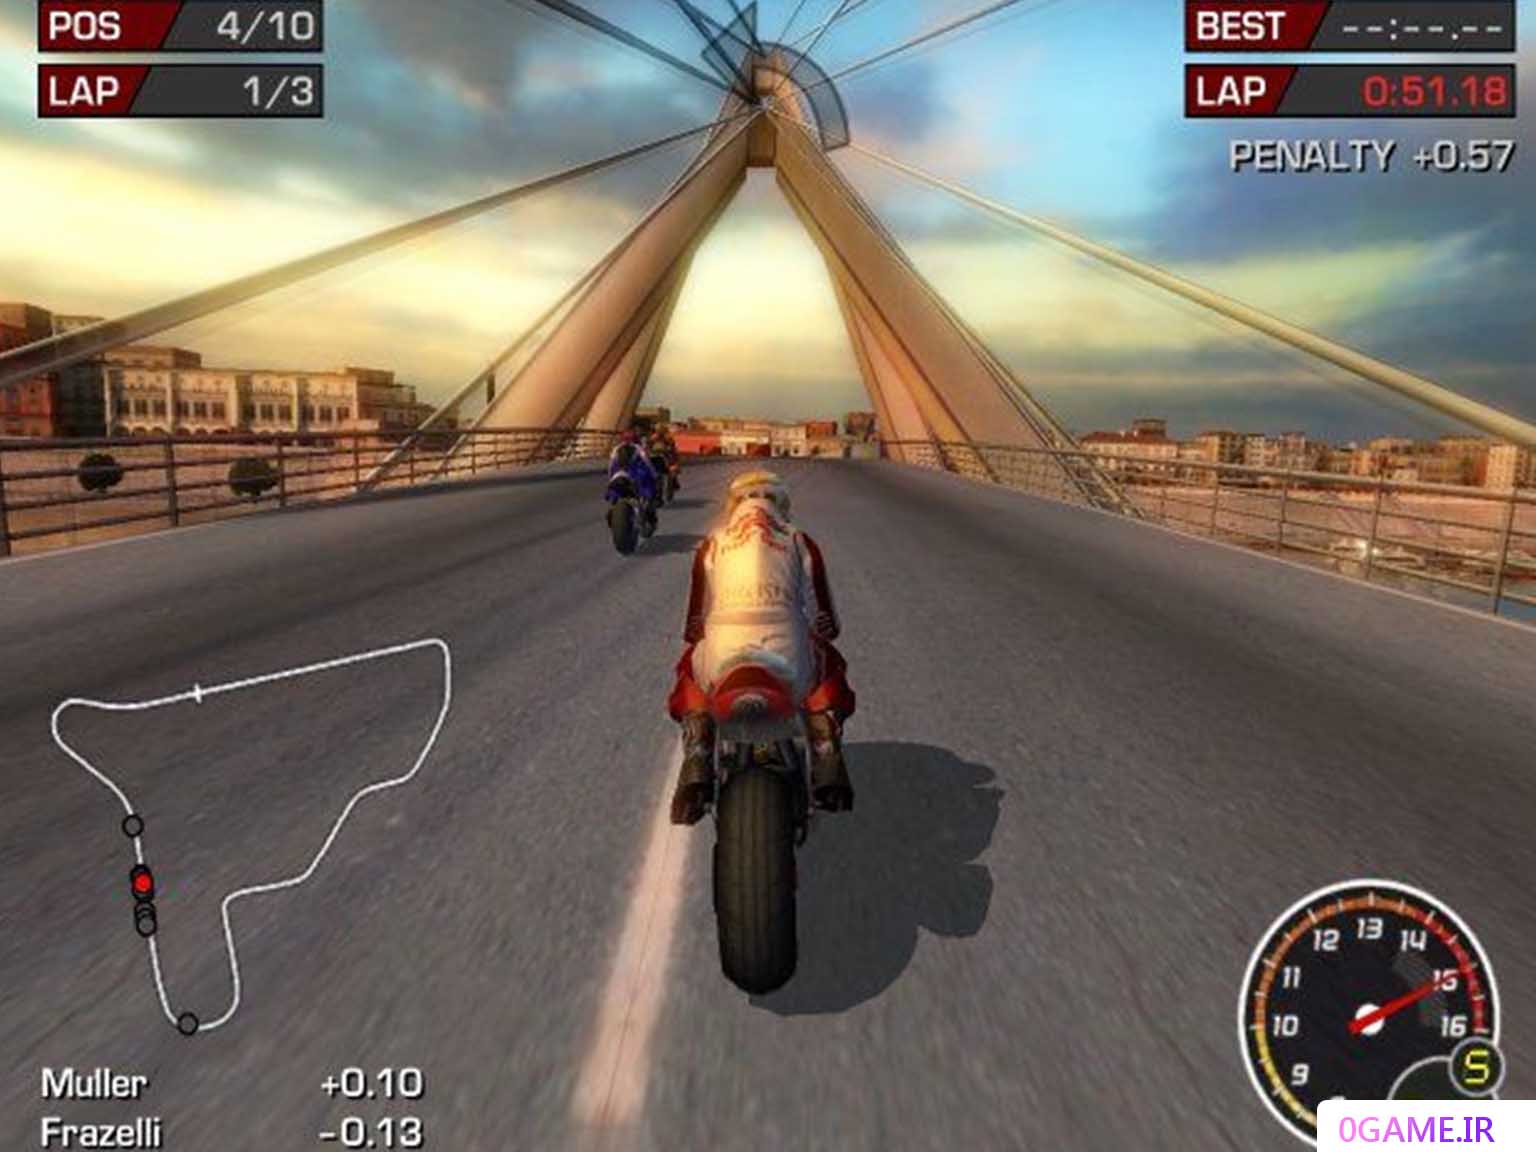 دانلود بازی موتور جی پی 3 (MotoGP) نسخه کامل برای کامپیوتر